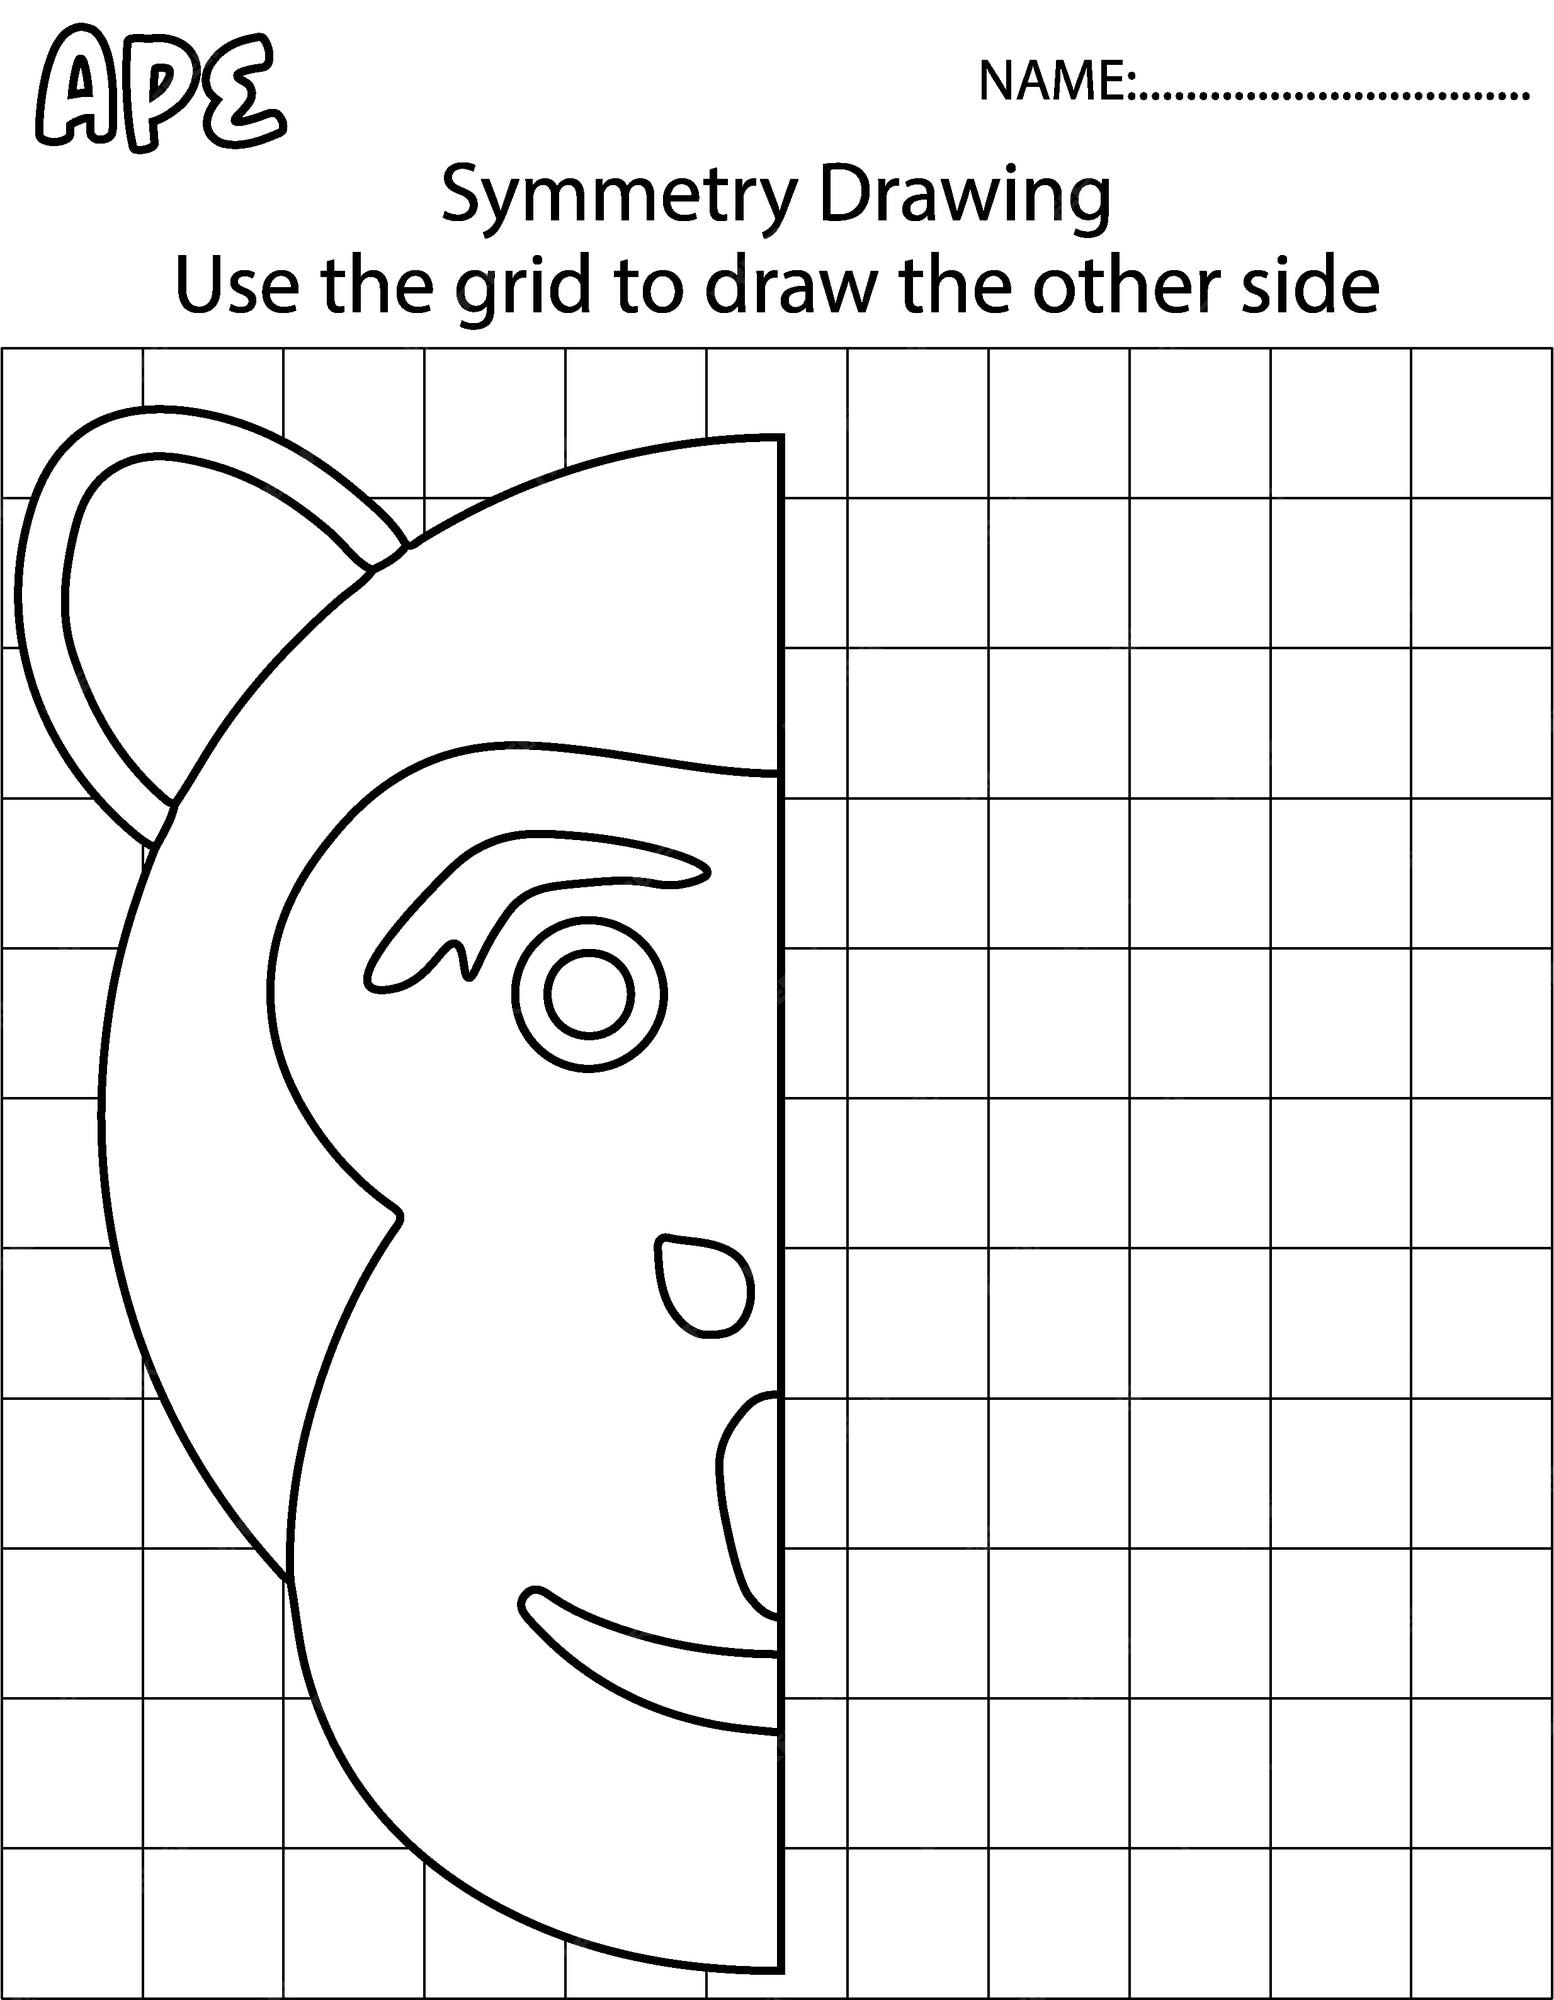 Jogo de desenho infantil com uma amostra do macaco. estilo de desenho  animado. ilustração vetorial.